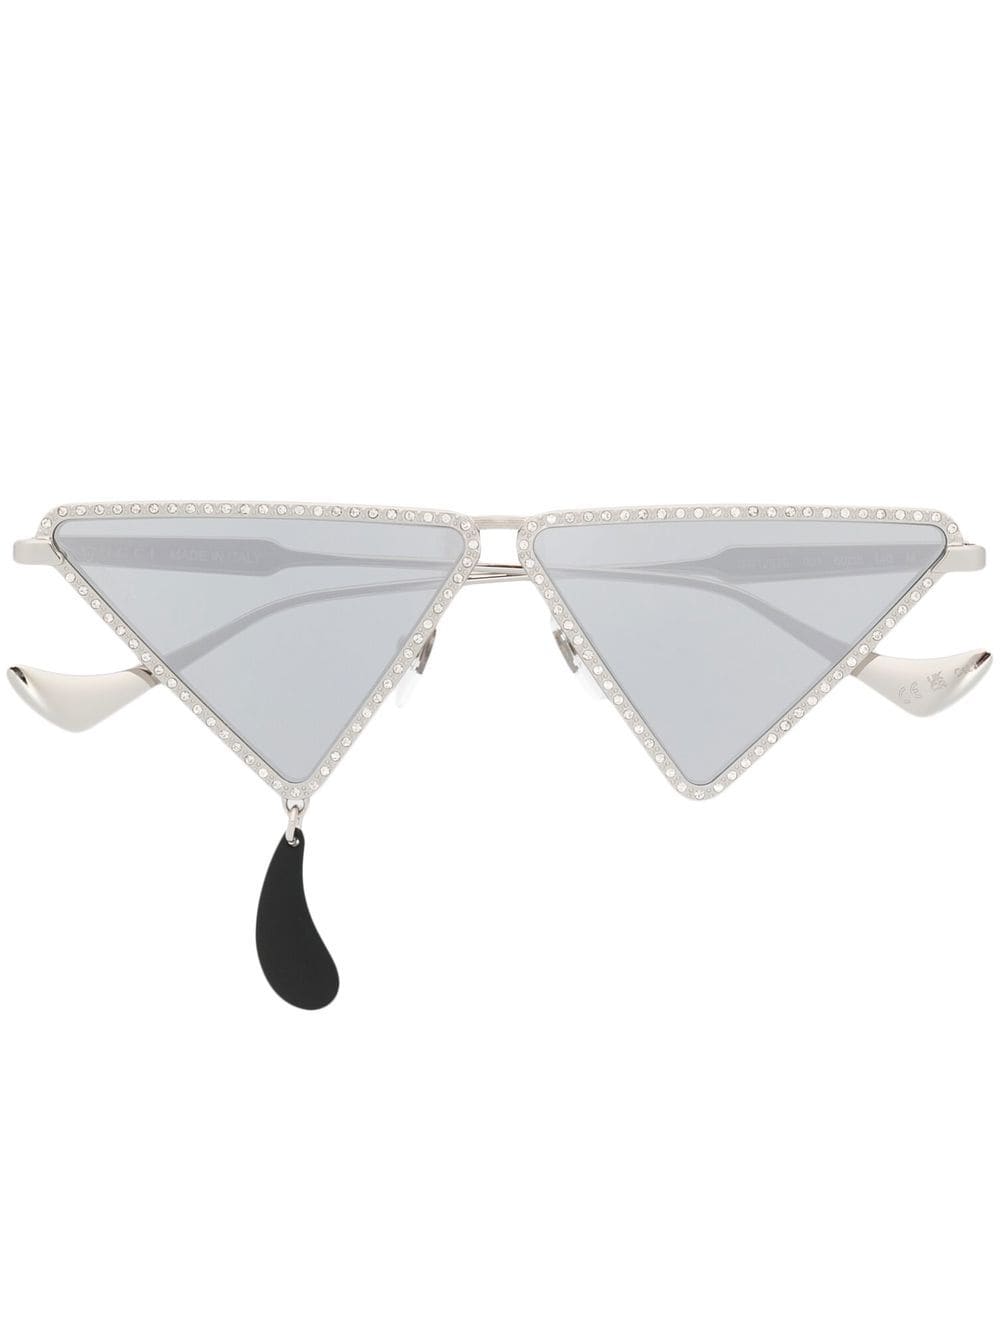 Gucci Eyewear embellished geometric sunglasses - Silver von Gucci Eyewear